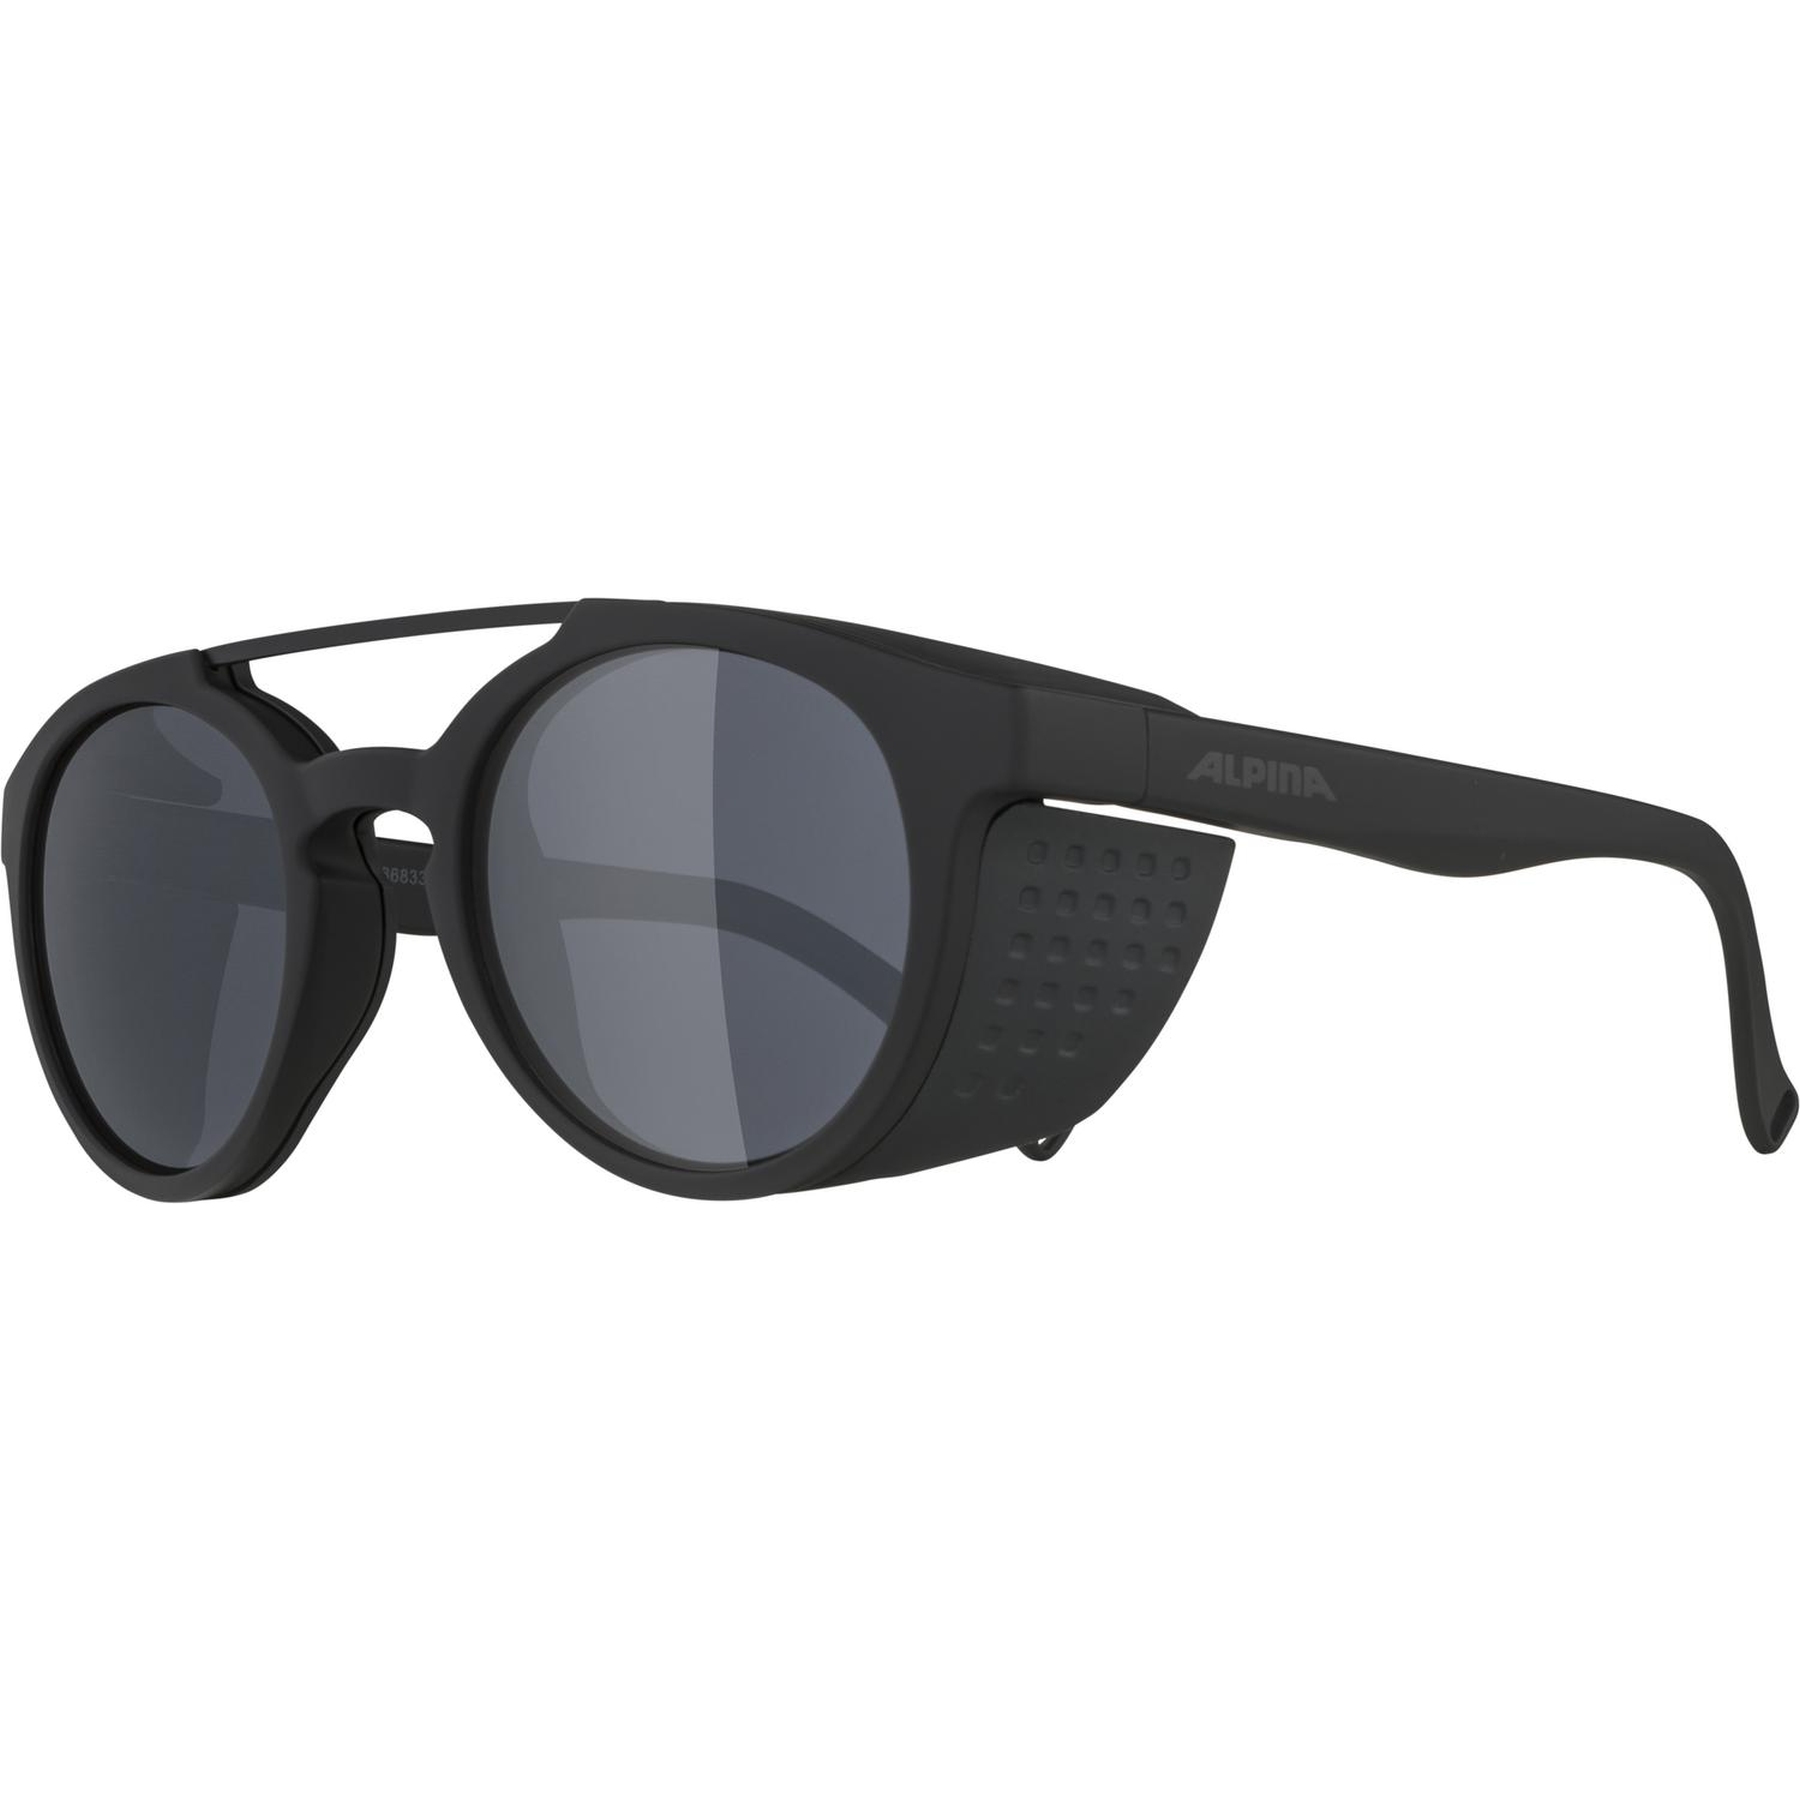 Produktbild von Alpina Glace Brille - all black matt/Black Mirror